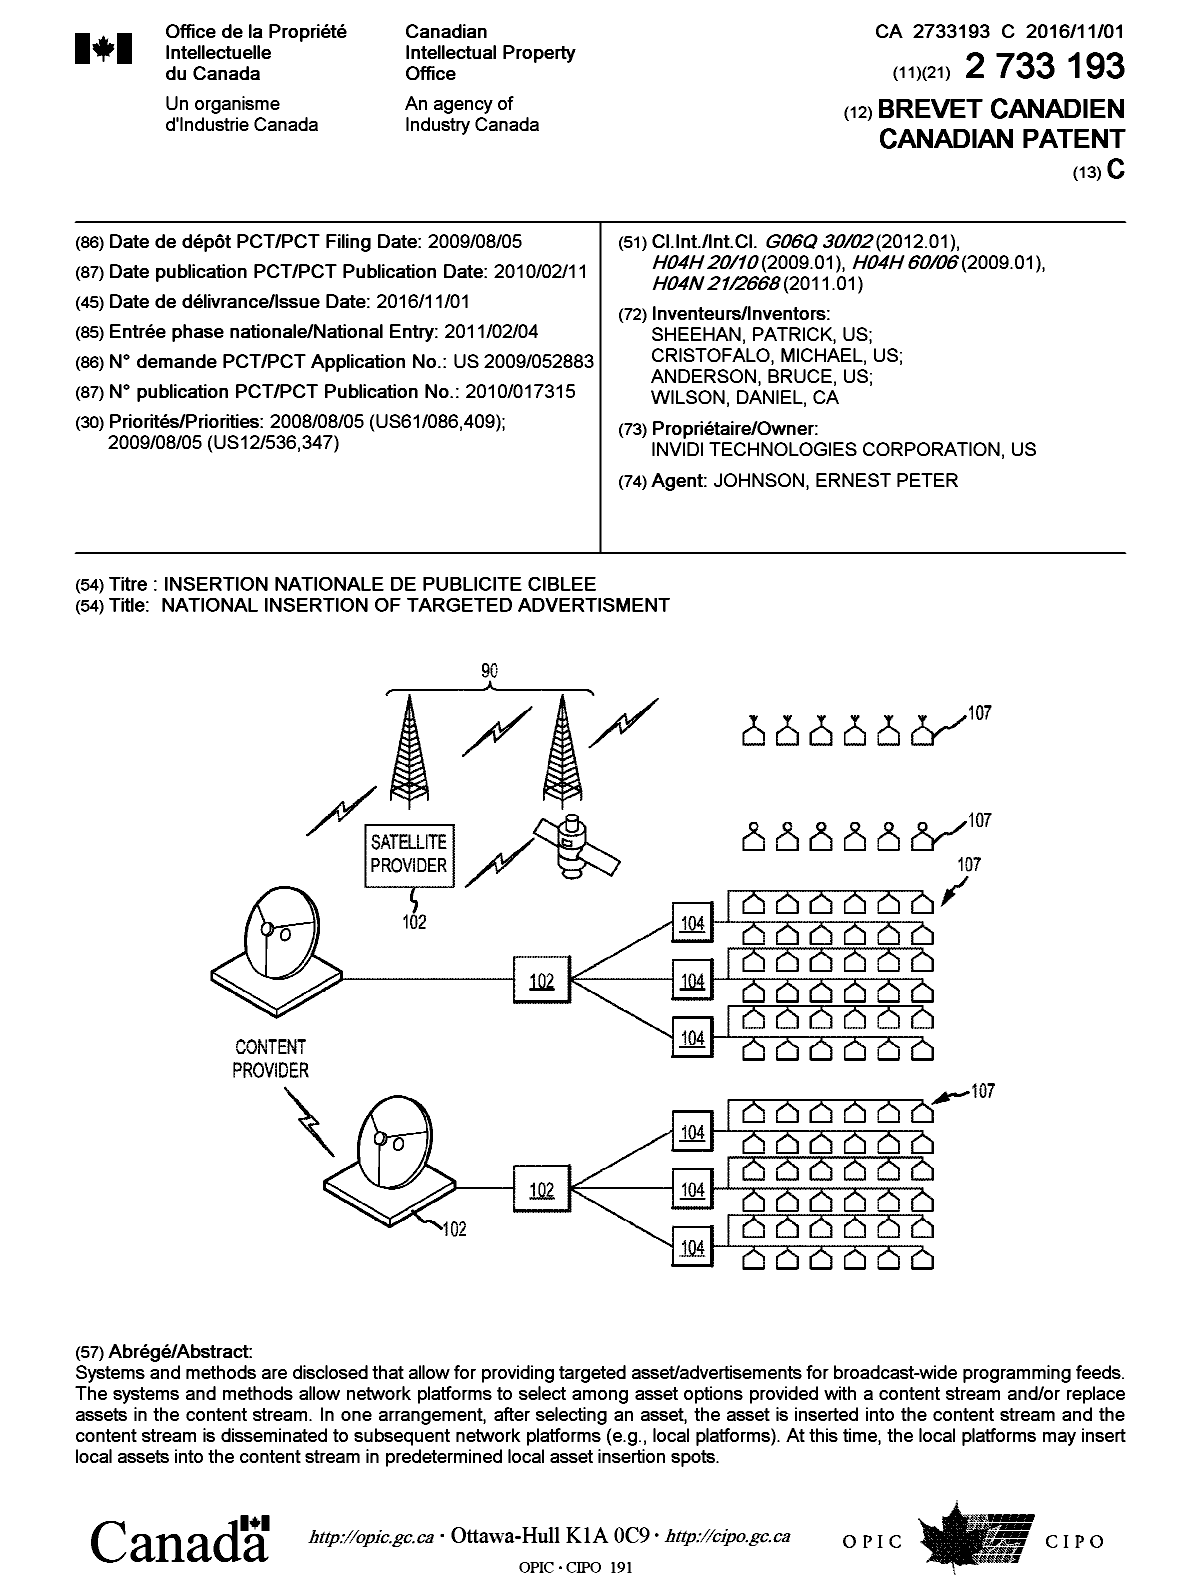 Document de brevet canadien 2733193. Page couverture 20151212. Image 1 de 1